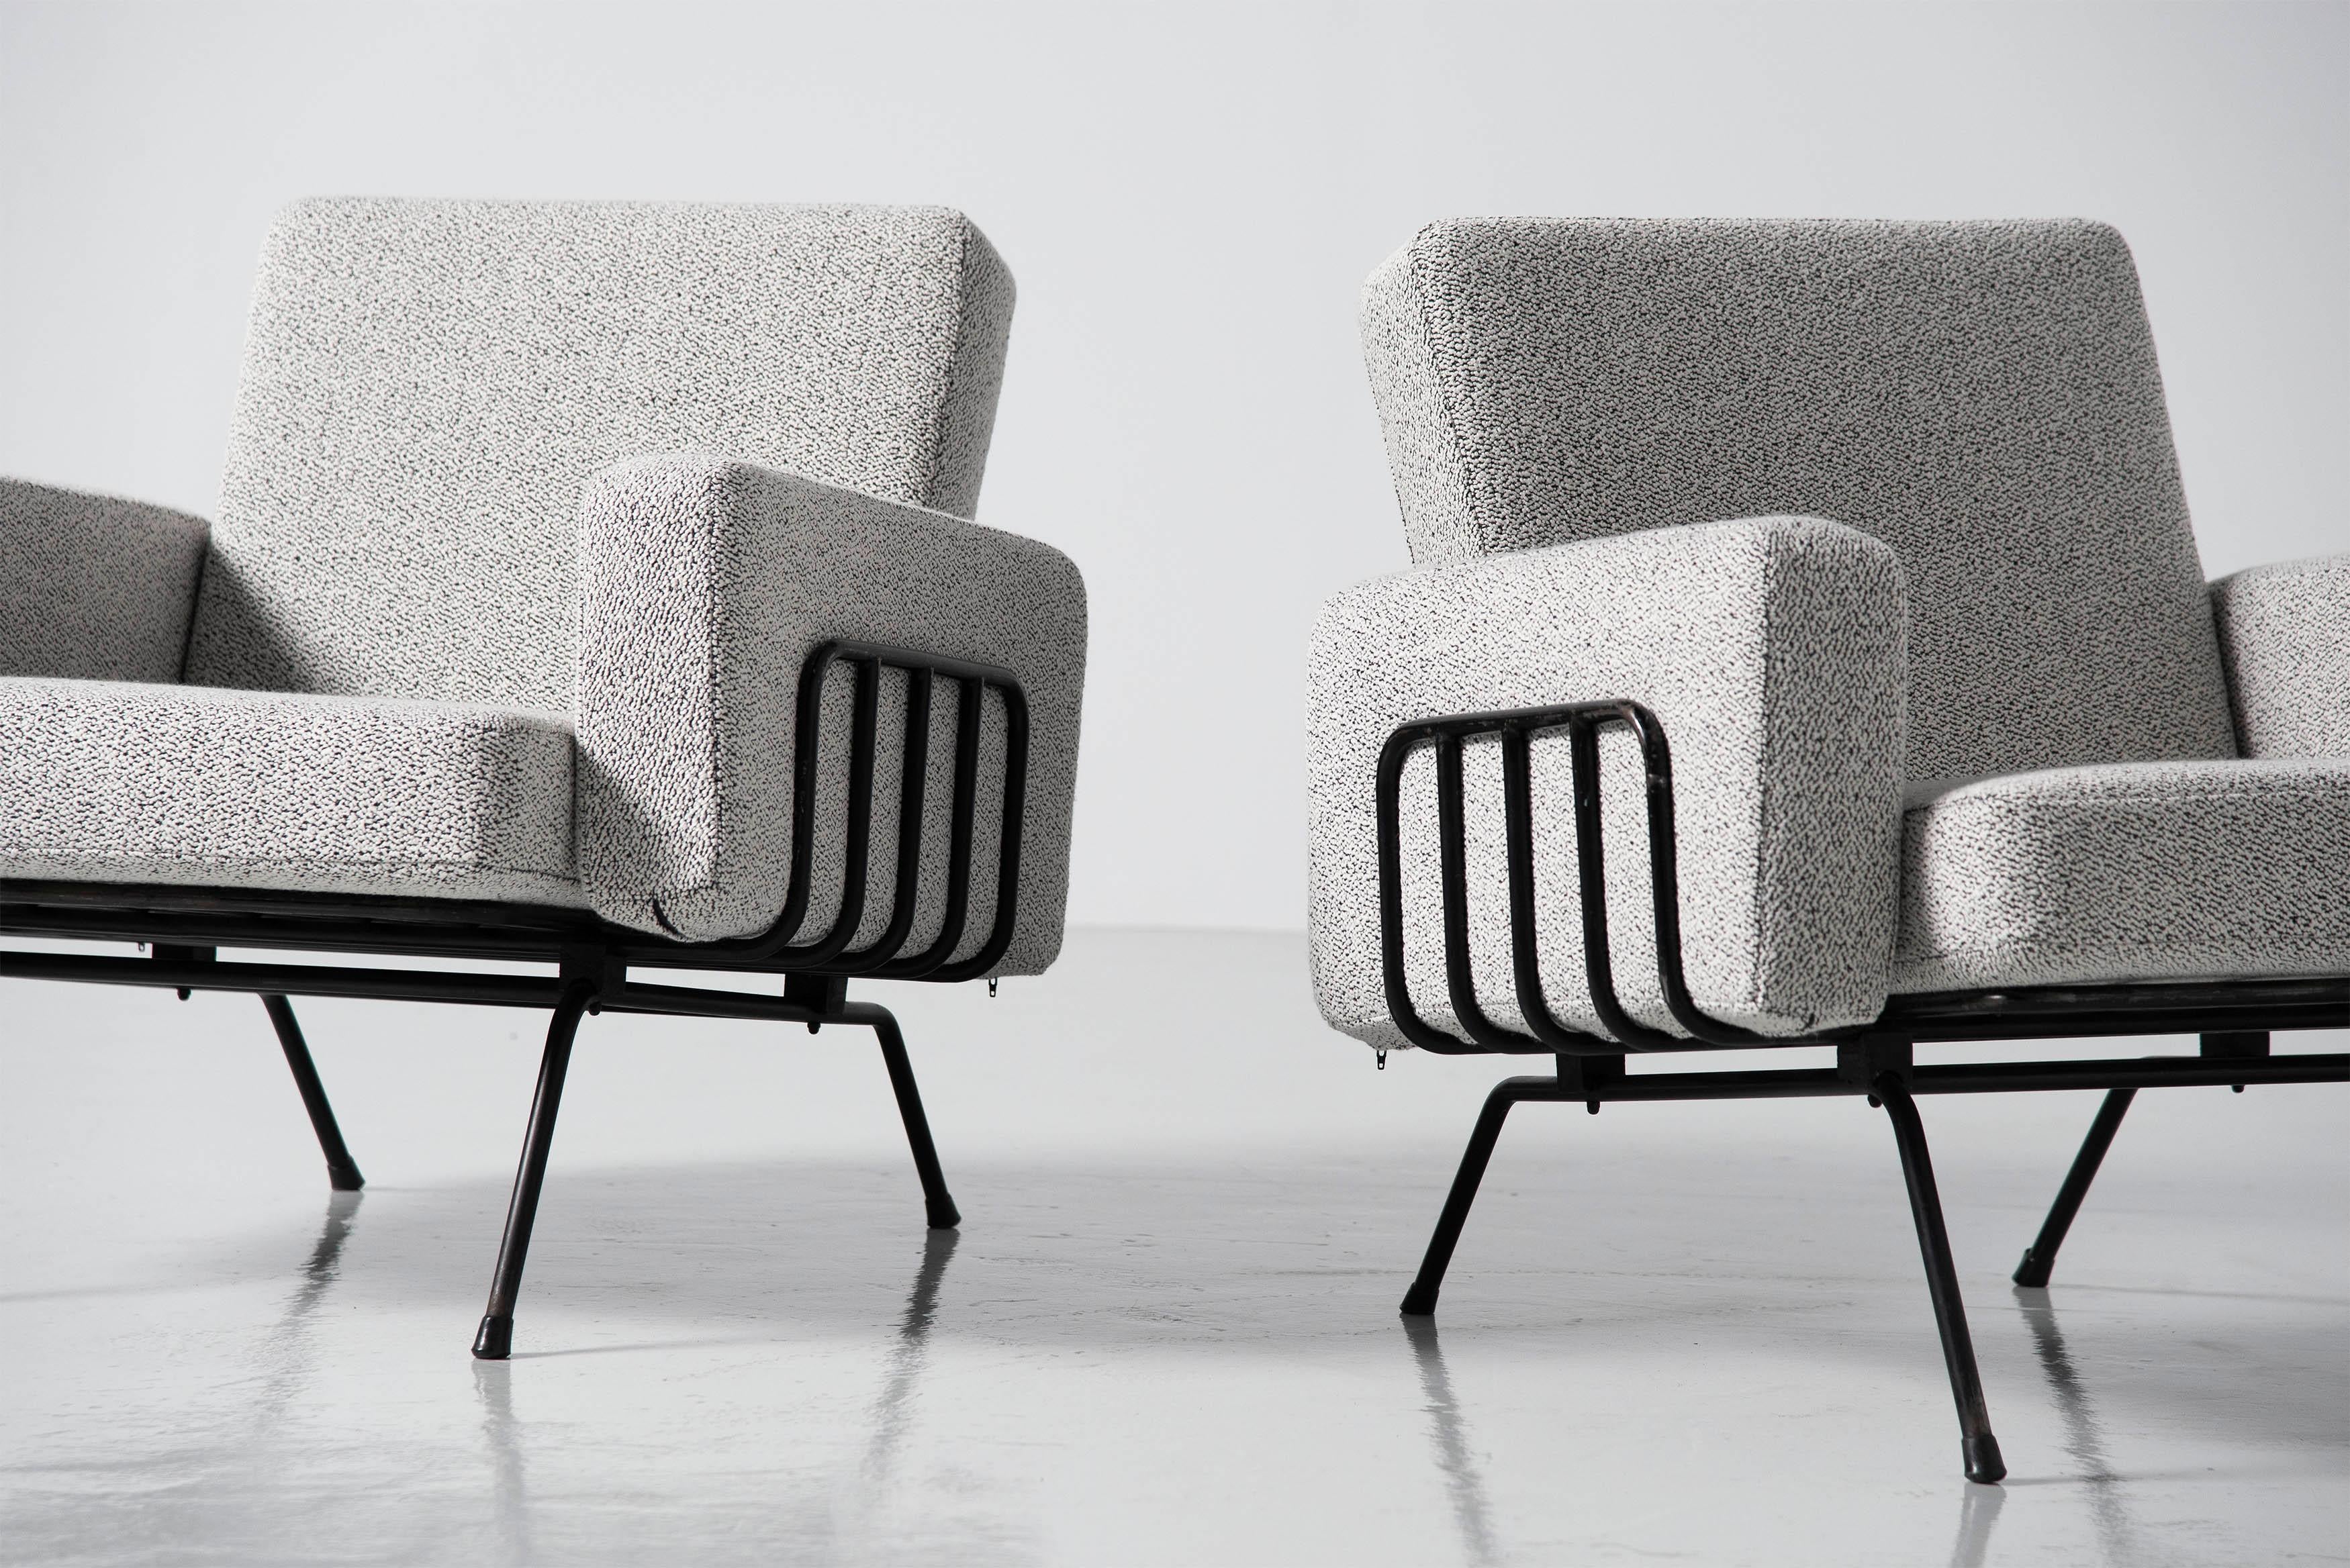 Superbes fauteuils de salon en forme attribués à un dessin de Gastone Rinaldi et fabriqués par RIMA, Italie 1955. Les chaises sont dotées d'une étonnante structure en acier tubulaire, brillamment soudée pour former un cadre sculptural. La structure